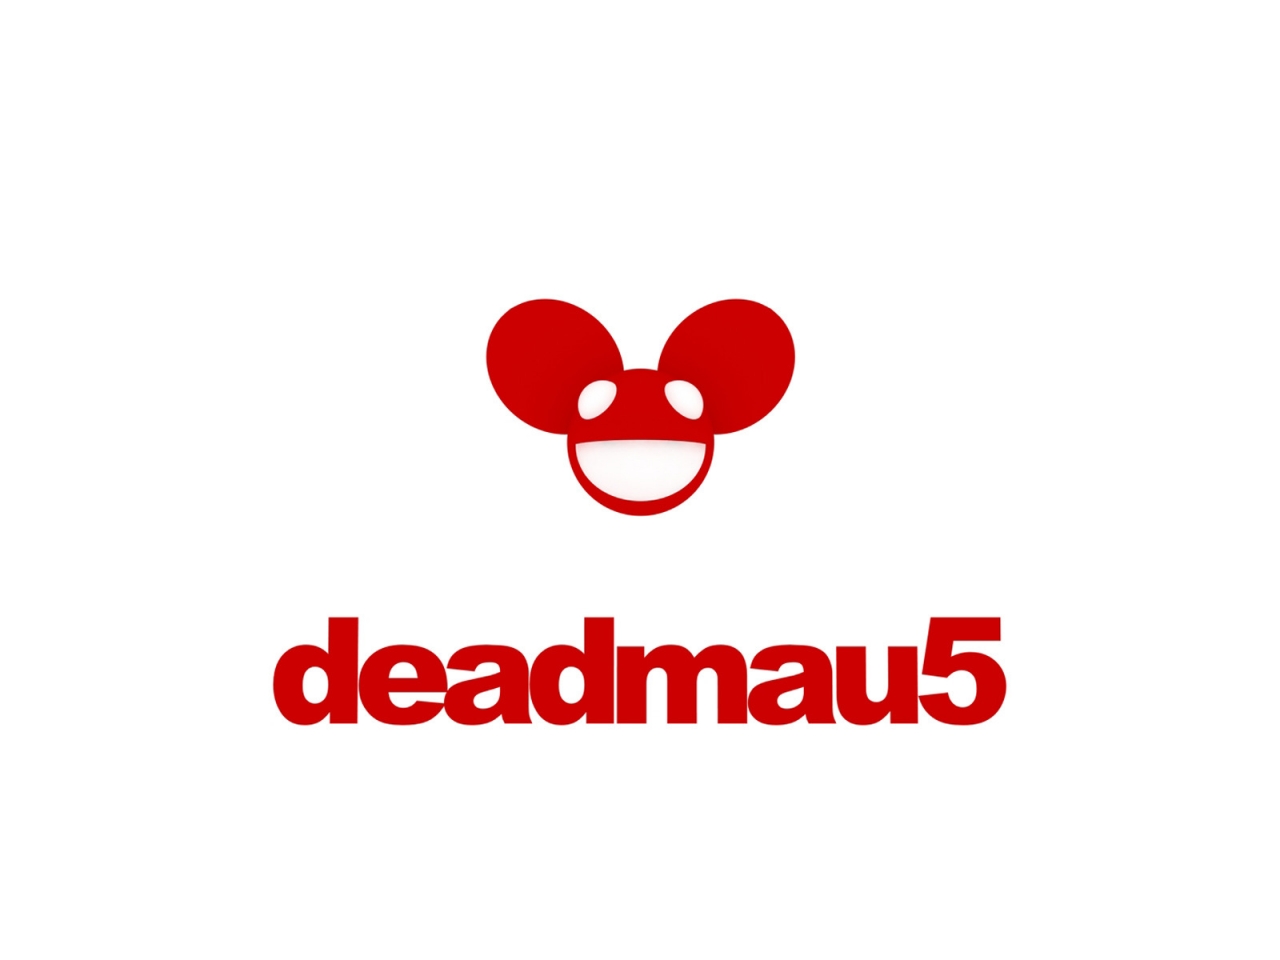 Deadmau5 Logo for 1280 x 960 resolution